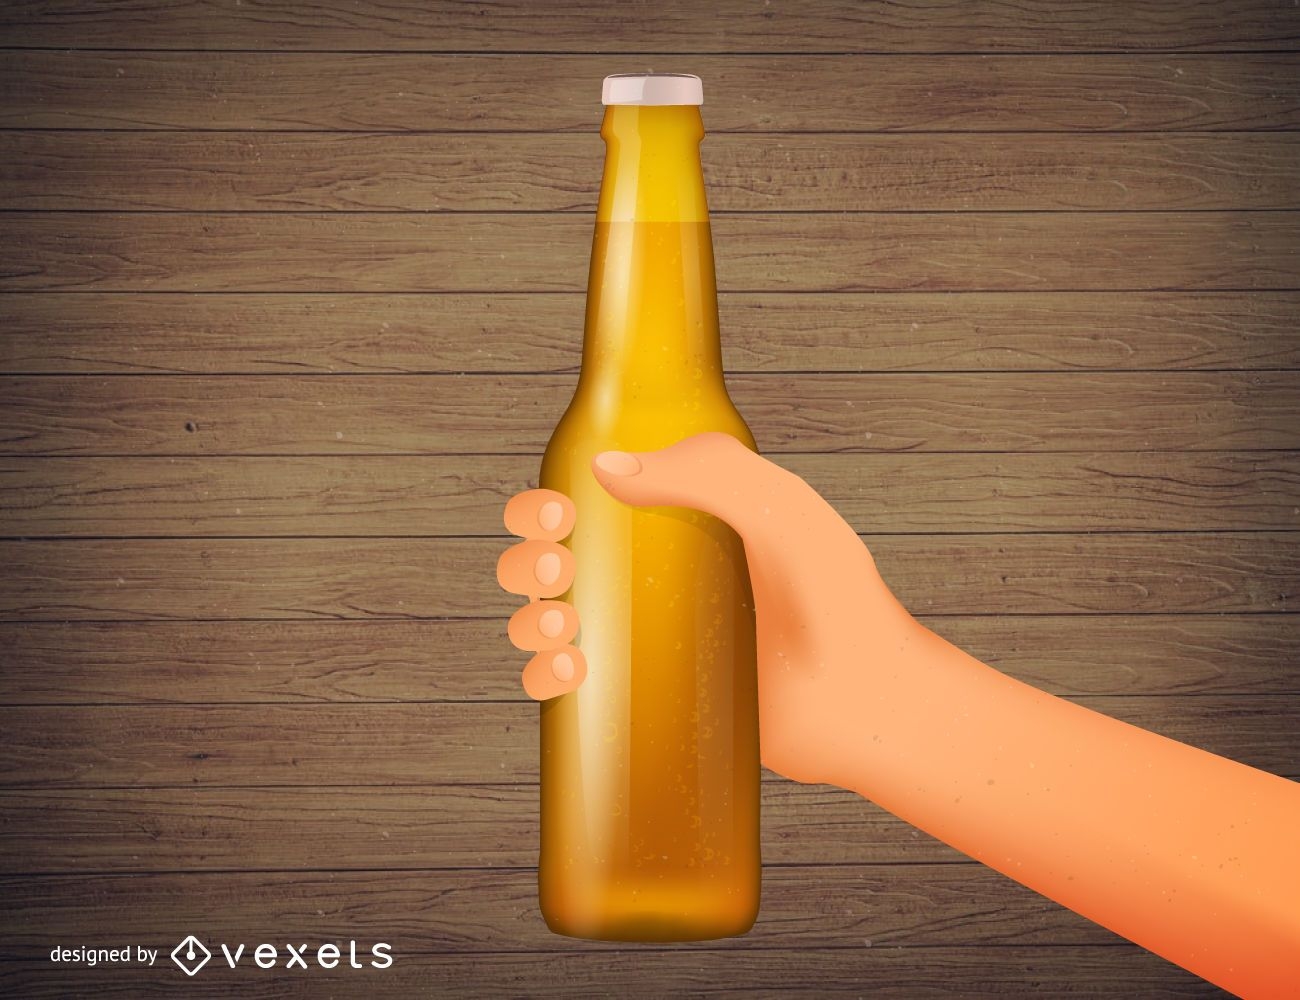 Handhaltende Bierflasche realistische Illustration